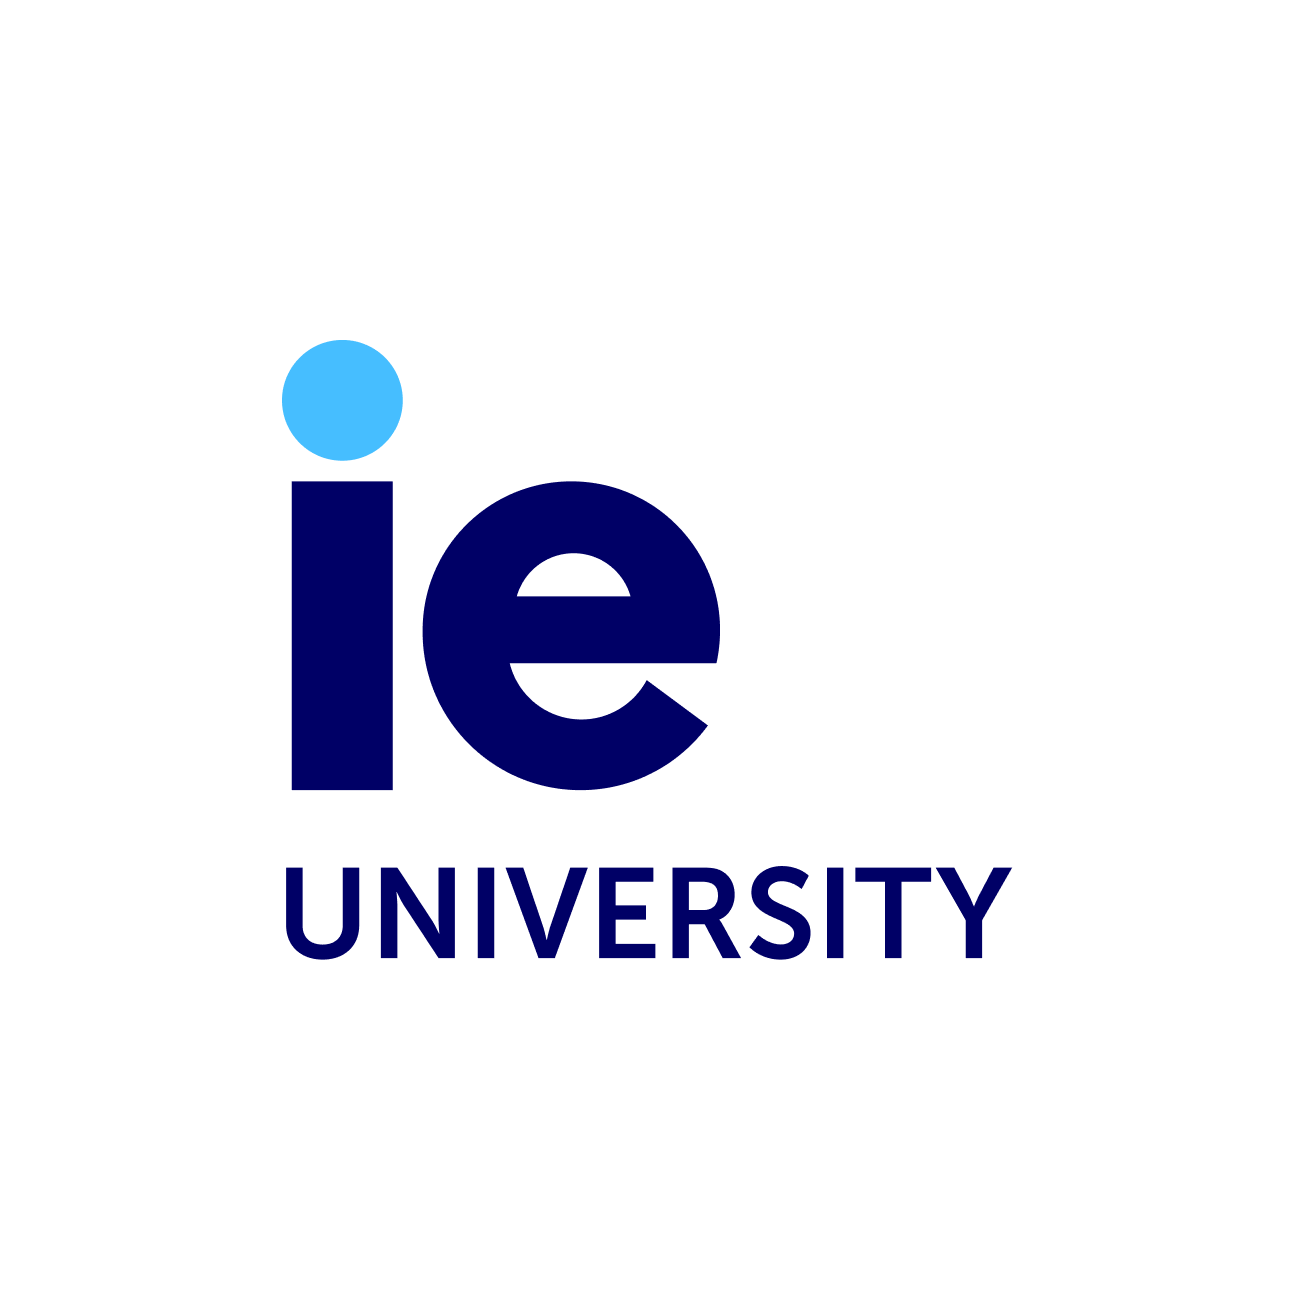 University IE